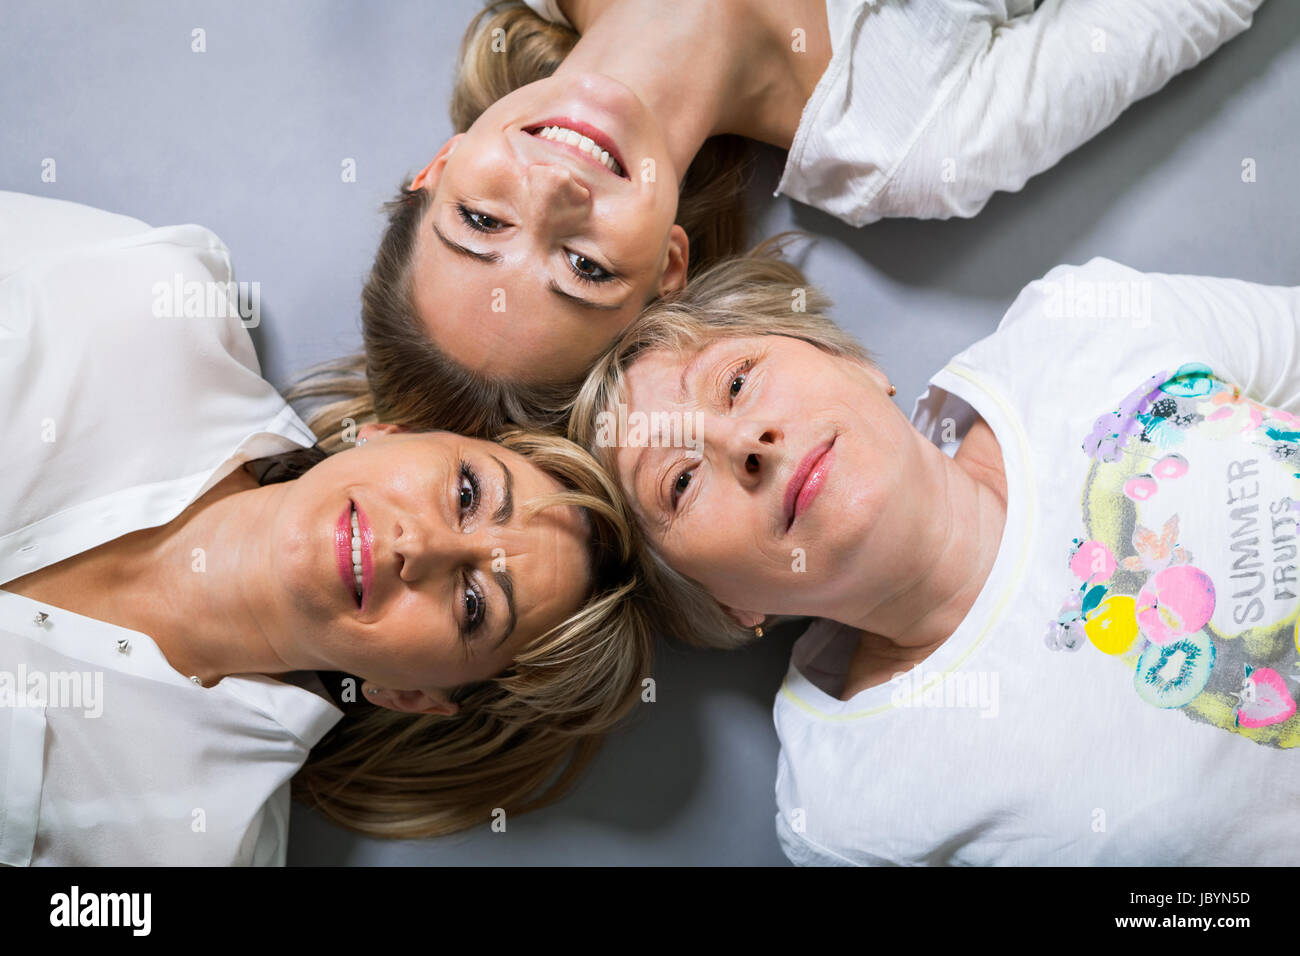 Drei generationen großmutter mutter und tochter im ritratto vor grauem hintergrund familie Foto Stock